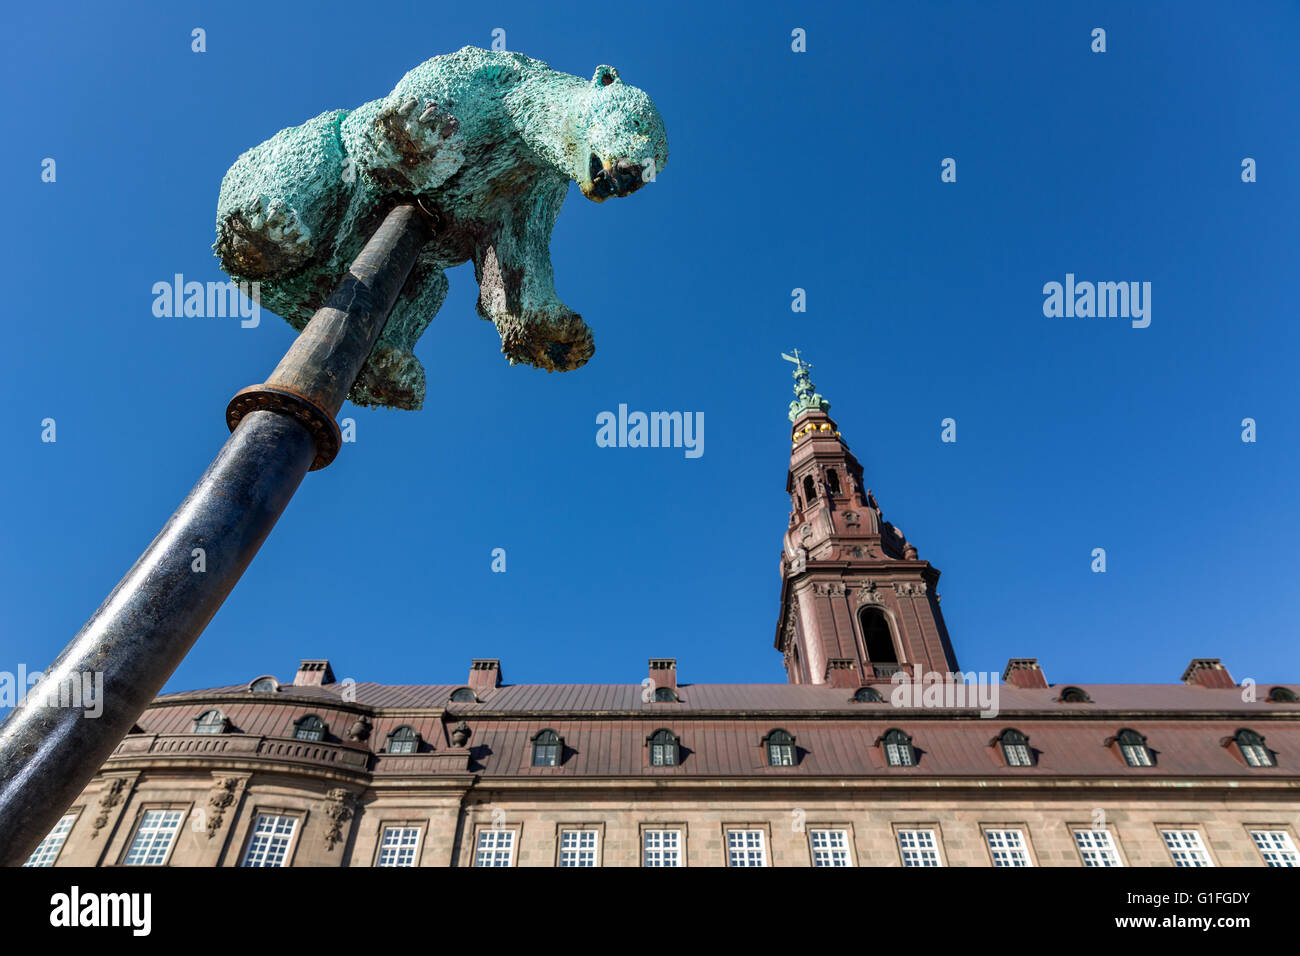 La escultura 'insoportable' frente al Parlamento danés, Slotsholmen, Copenhague, Dinamarca Foto de stock